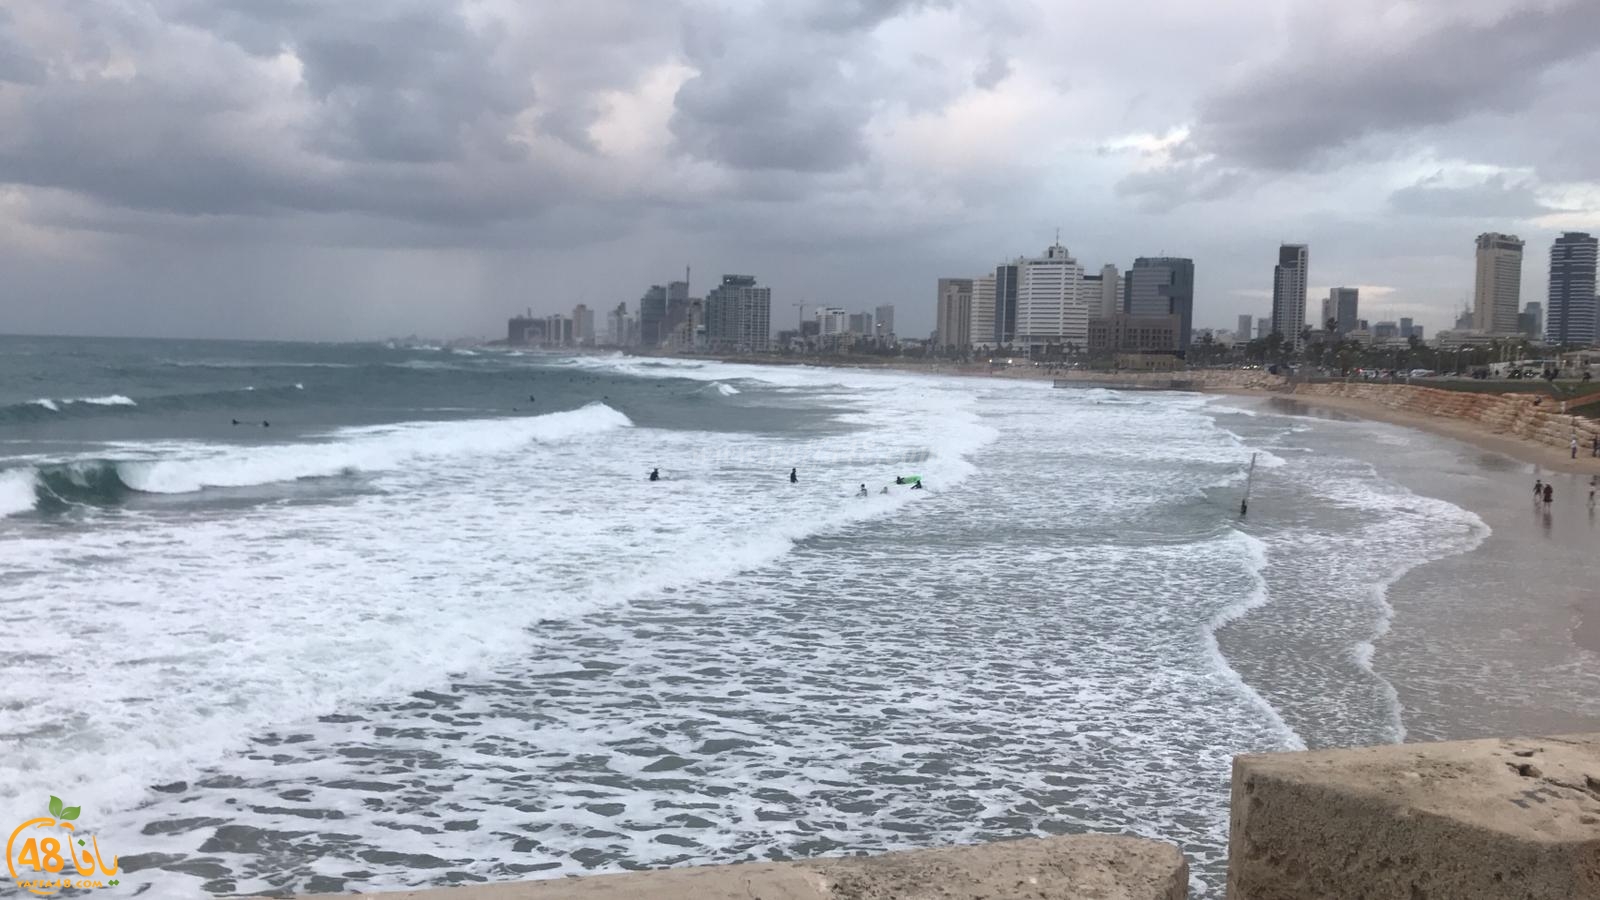  شاهد: الأمواج العالية تجذب محبي ركوب الأمواج على شاطئ بحر يافا 